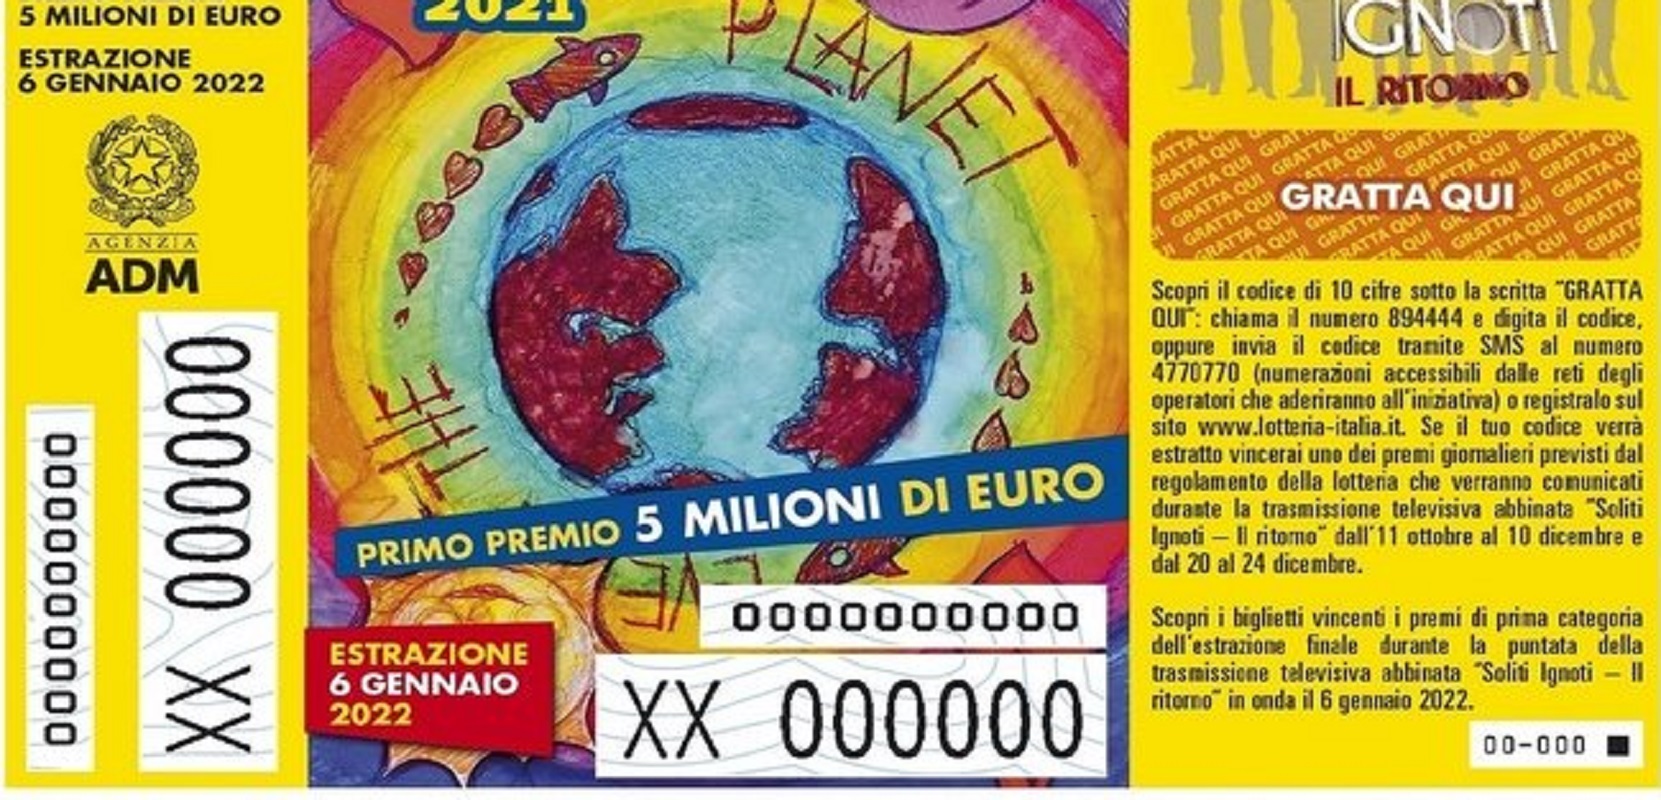 Lotteria italia 2022